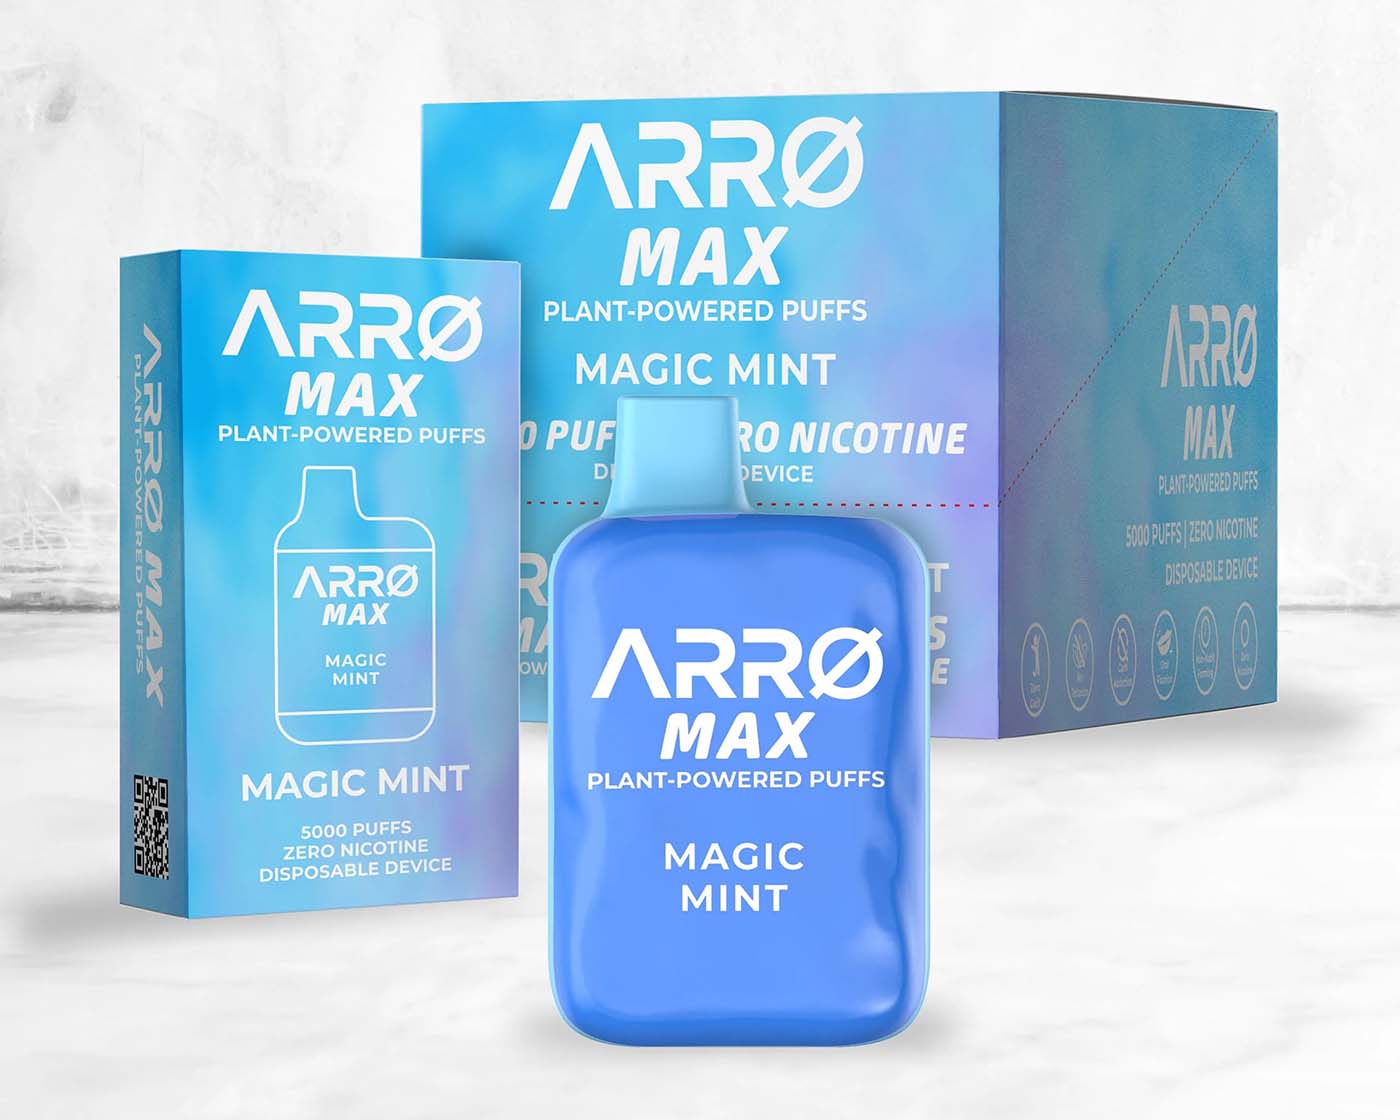 ARRØ Max Plant-Powered Puffs in Magic Mint flavor